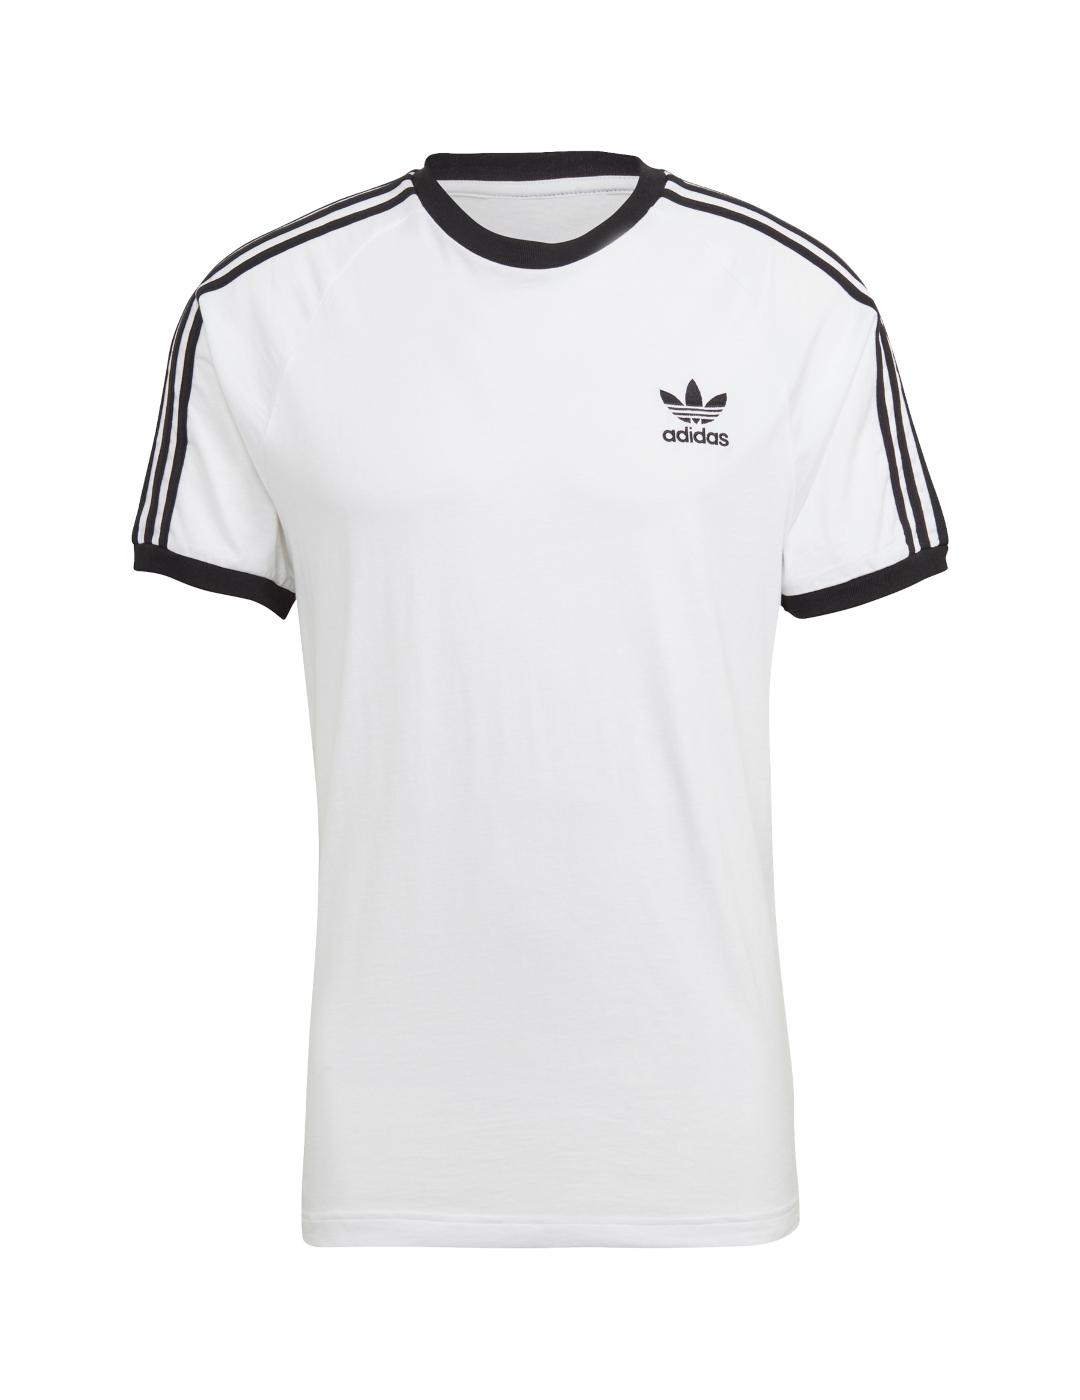 3 camisetas negras llanas Pro 5 atléticas en blanco para hombre